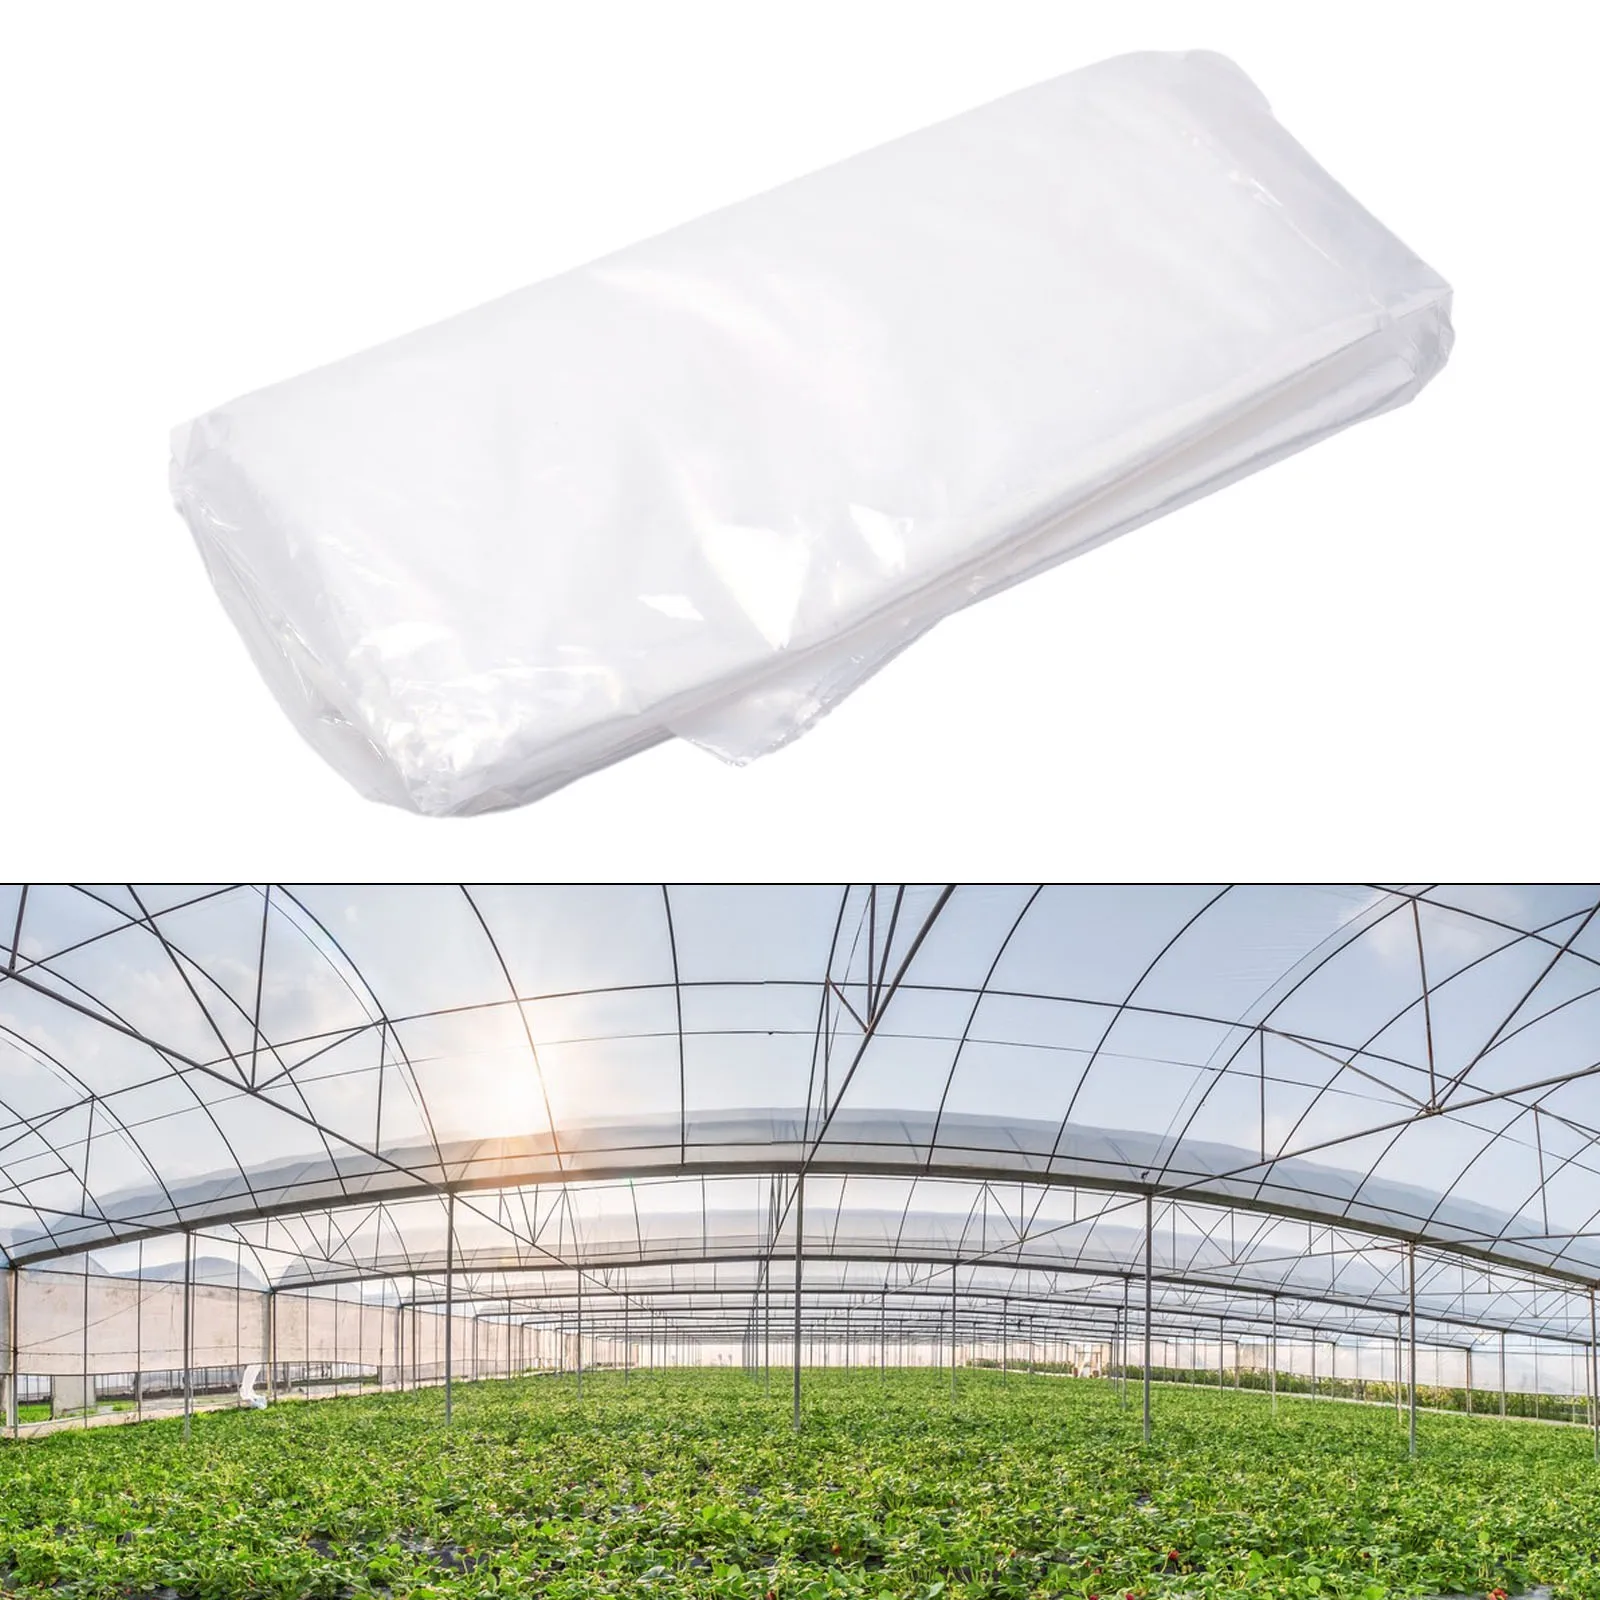 

1 шт. прозрачный материал для самостоятельной сборки, полиэтиленовый пластиковый лист для сада, теплицы, крыши, палатки для выращивания, комнаты, сада, теплицы, сельского хозяйства